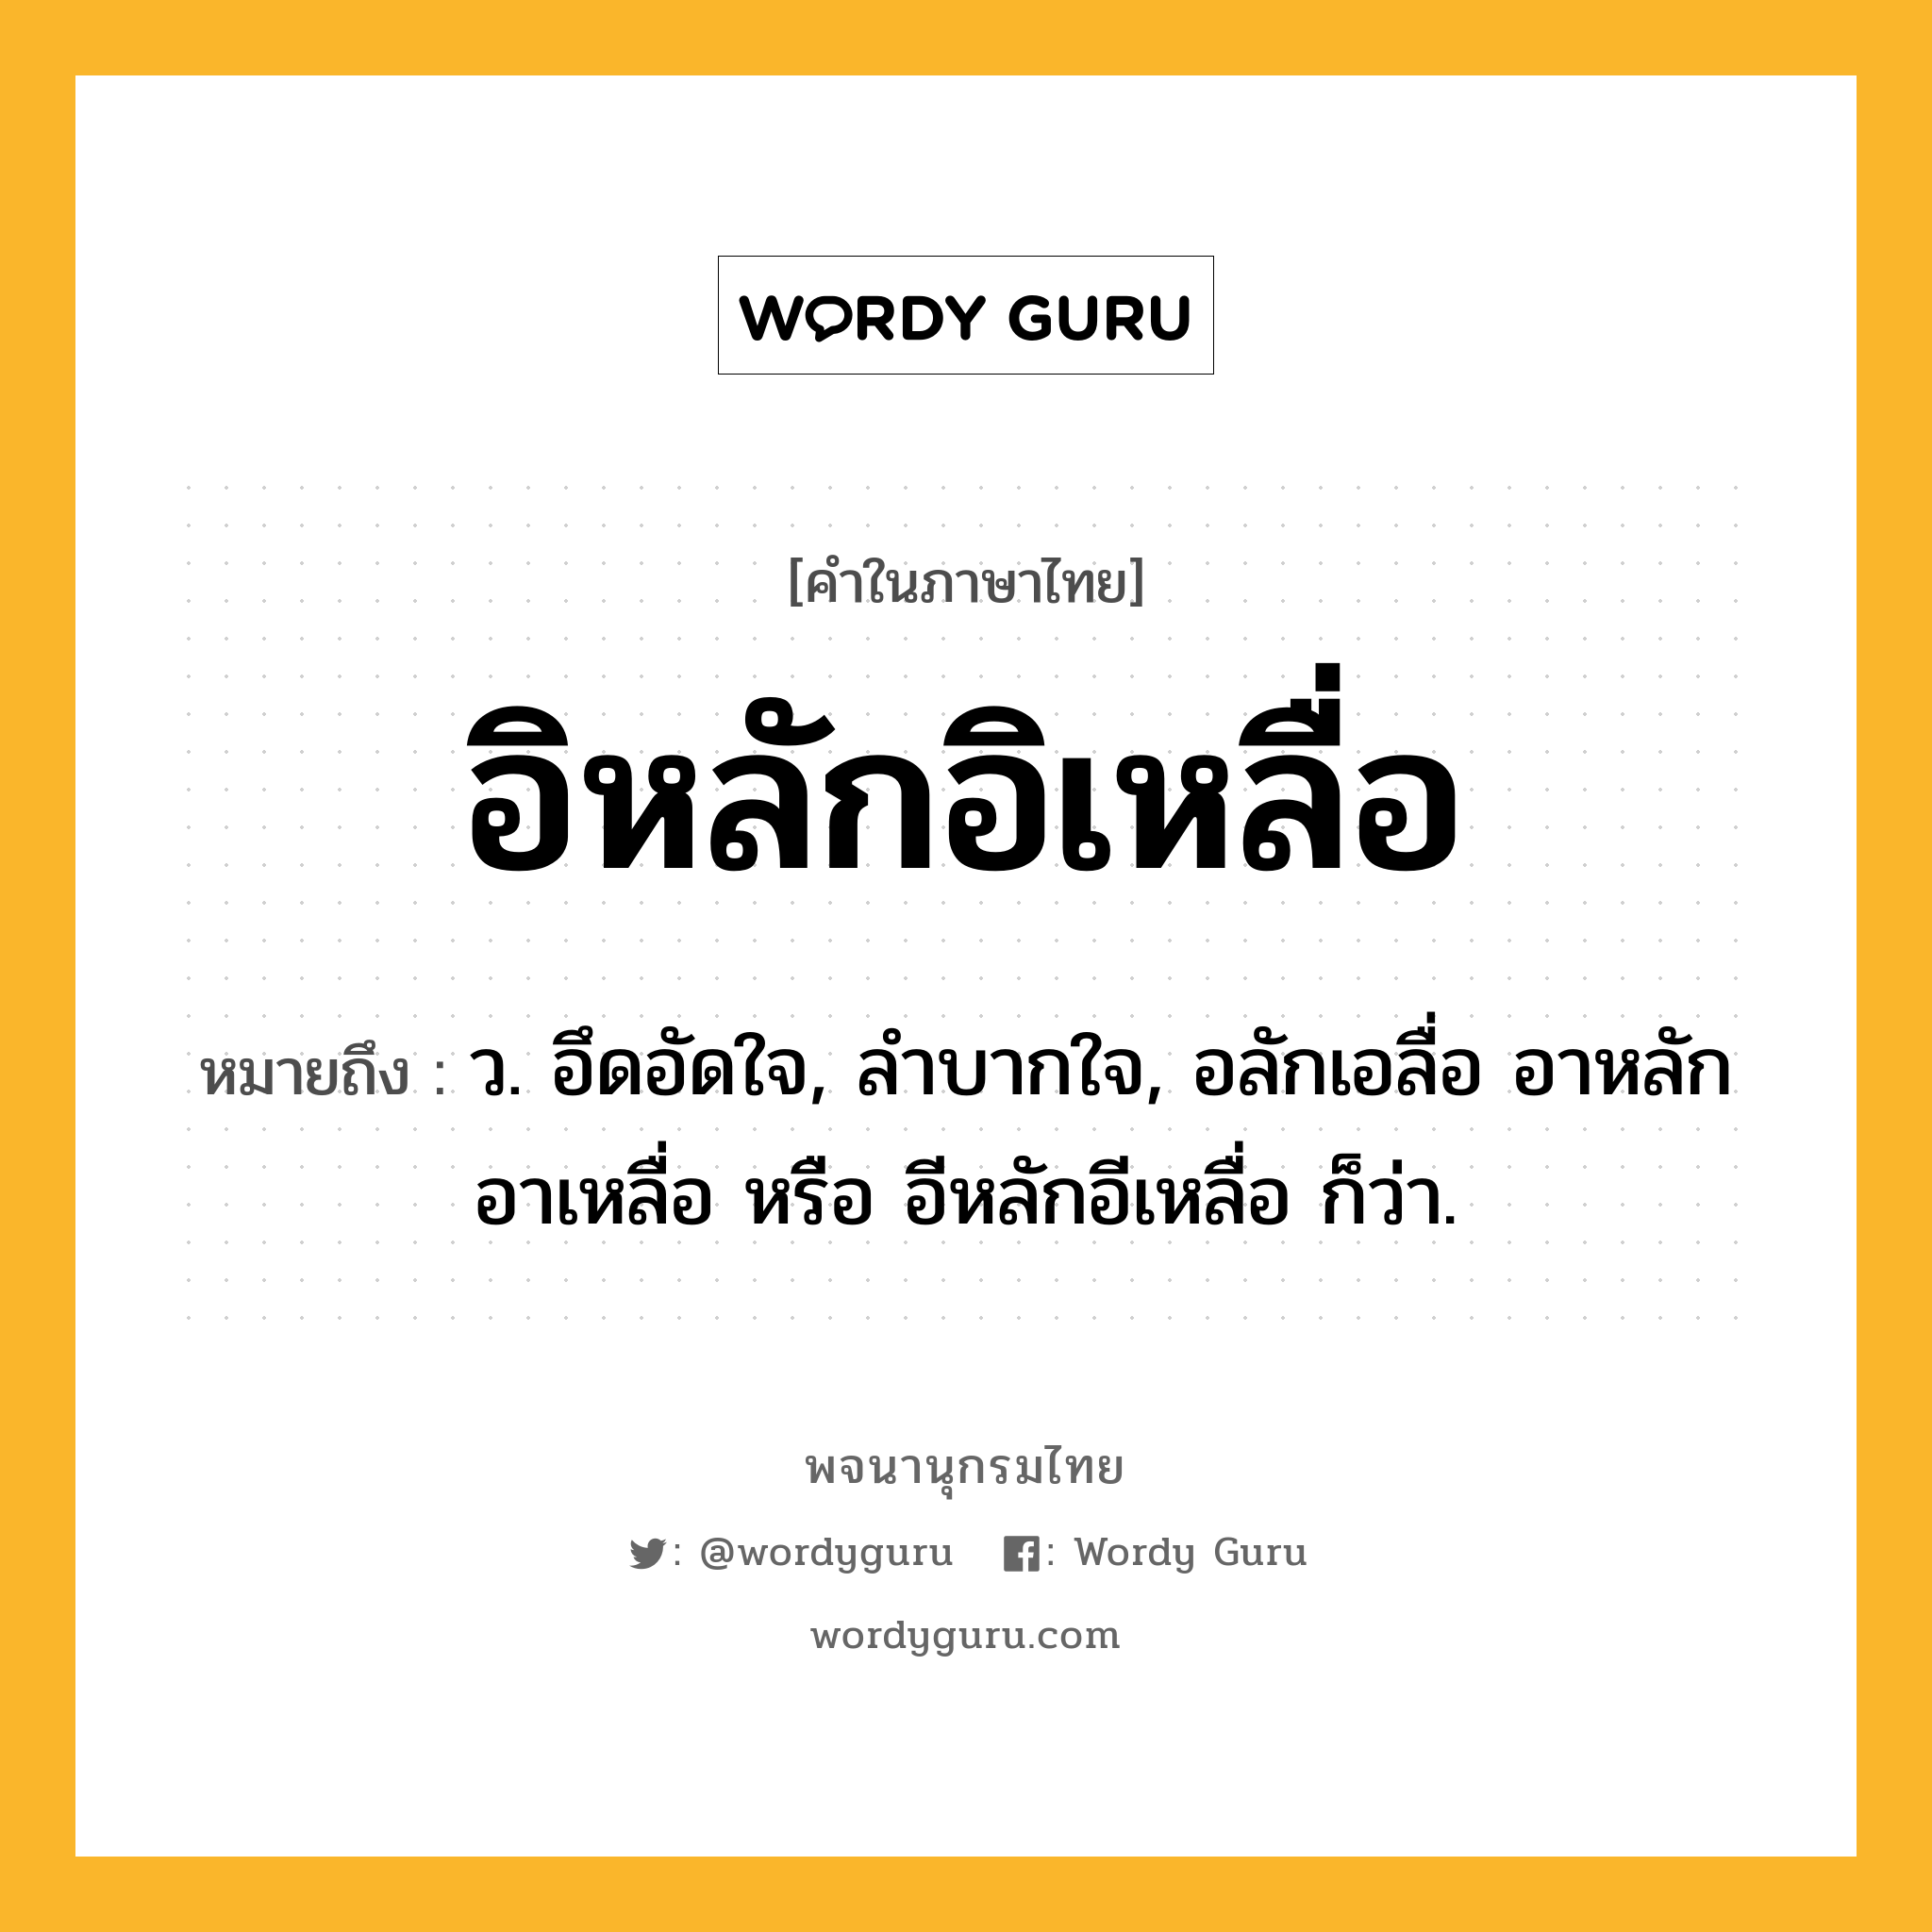 อิหลักอิเหลื่อ หมายถึงอะไร?, คำในภาษาไทย อิหลักอิเหลื่อ หมายถึง ว. อึดอัดใจ, ลําบากใจ, อลักเอลื่อ อาหลักอาเหลื่อ หรือ อีหลักอีเหลื่อ ก็ว่า.